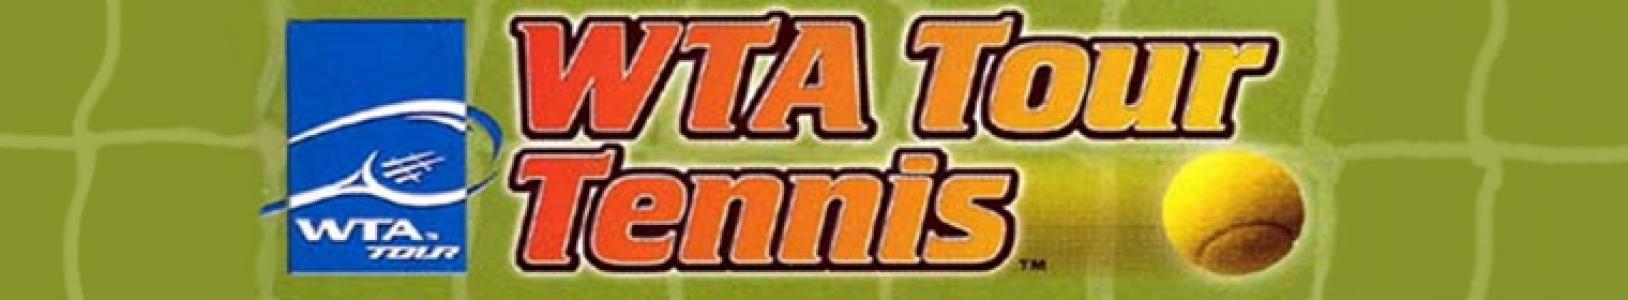 WTA Tour Tennis banner